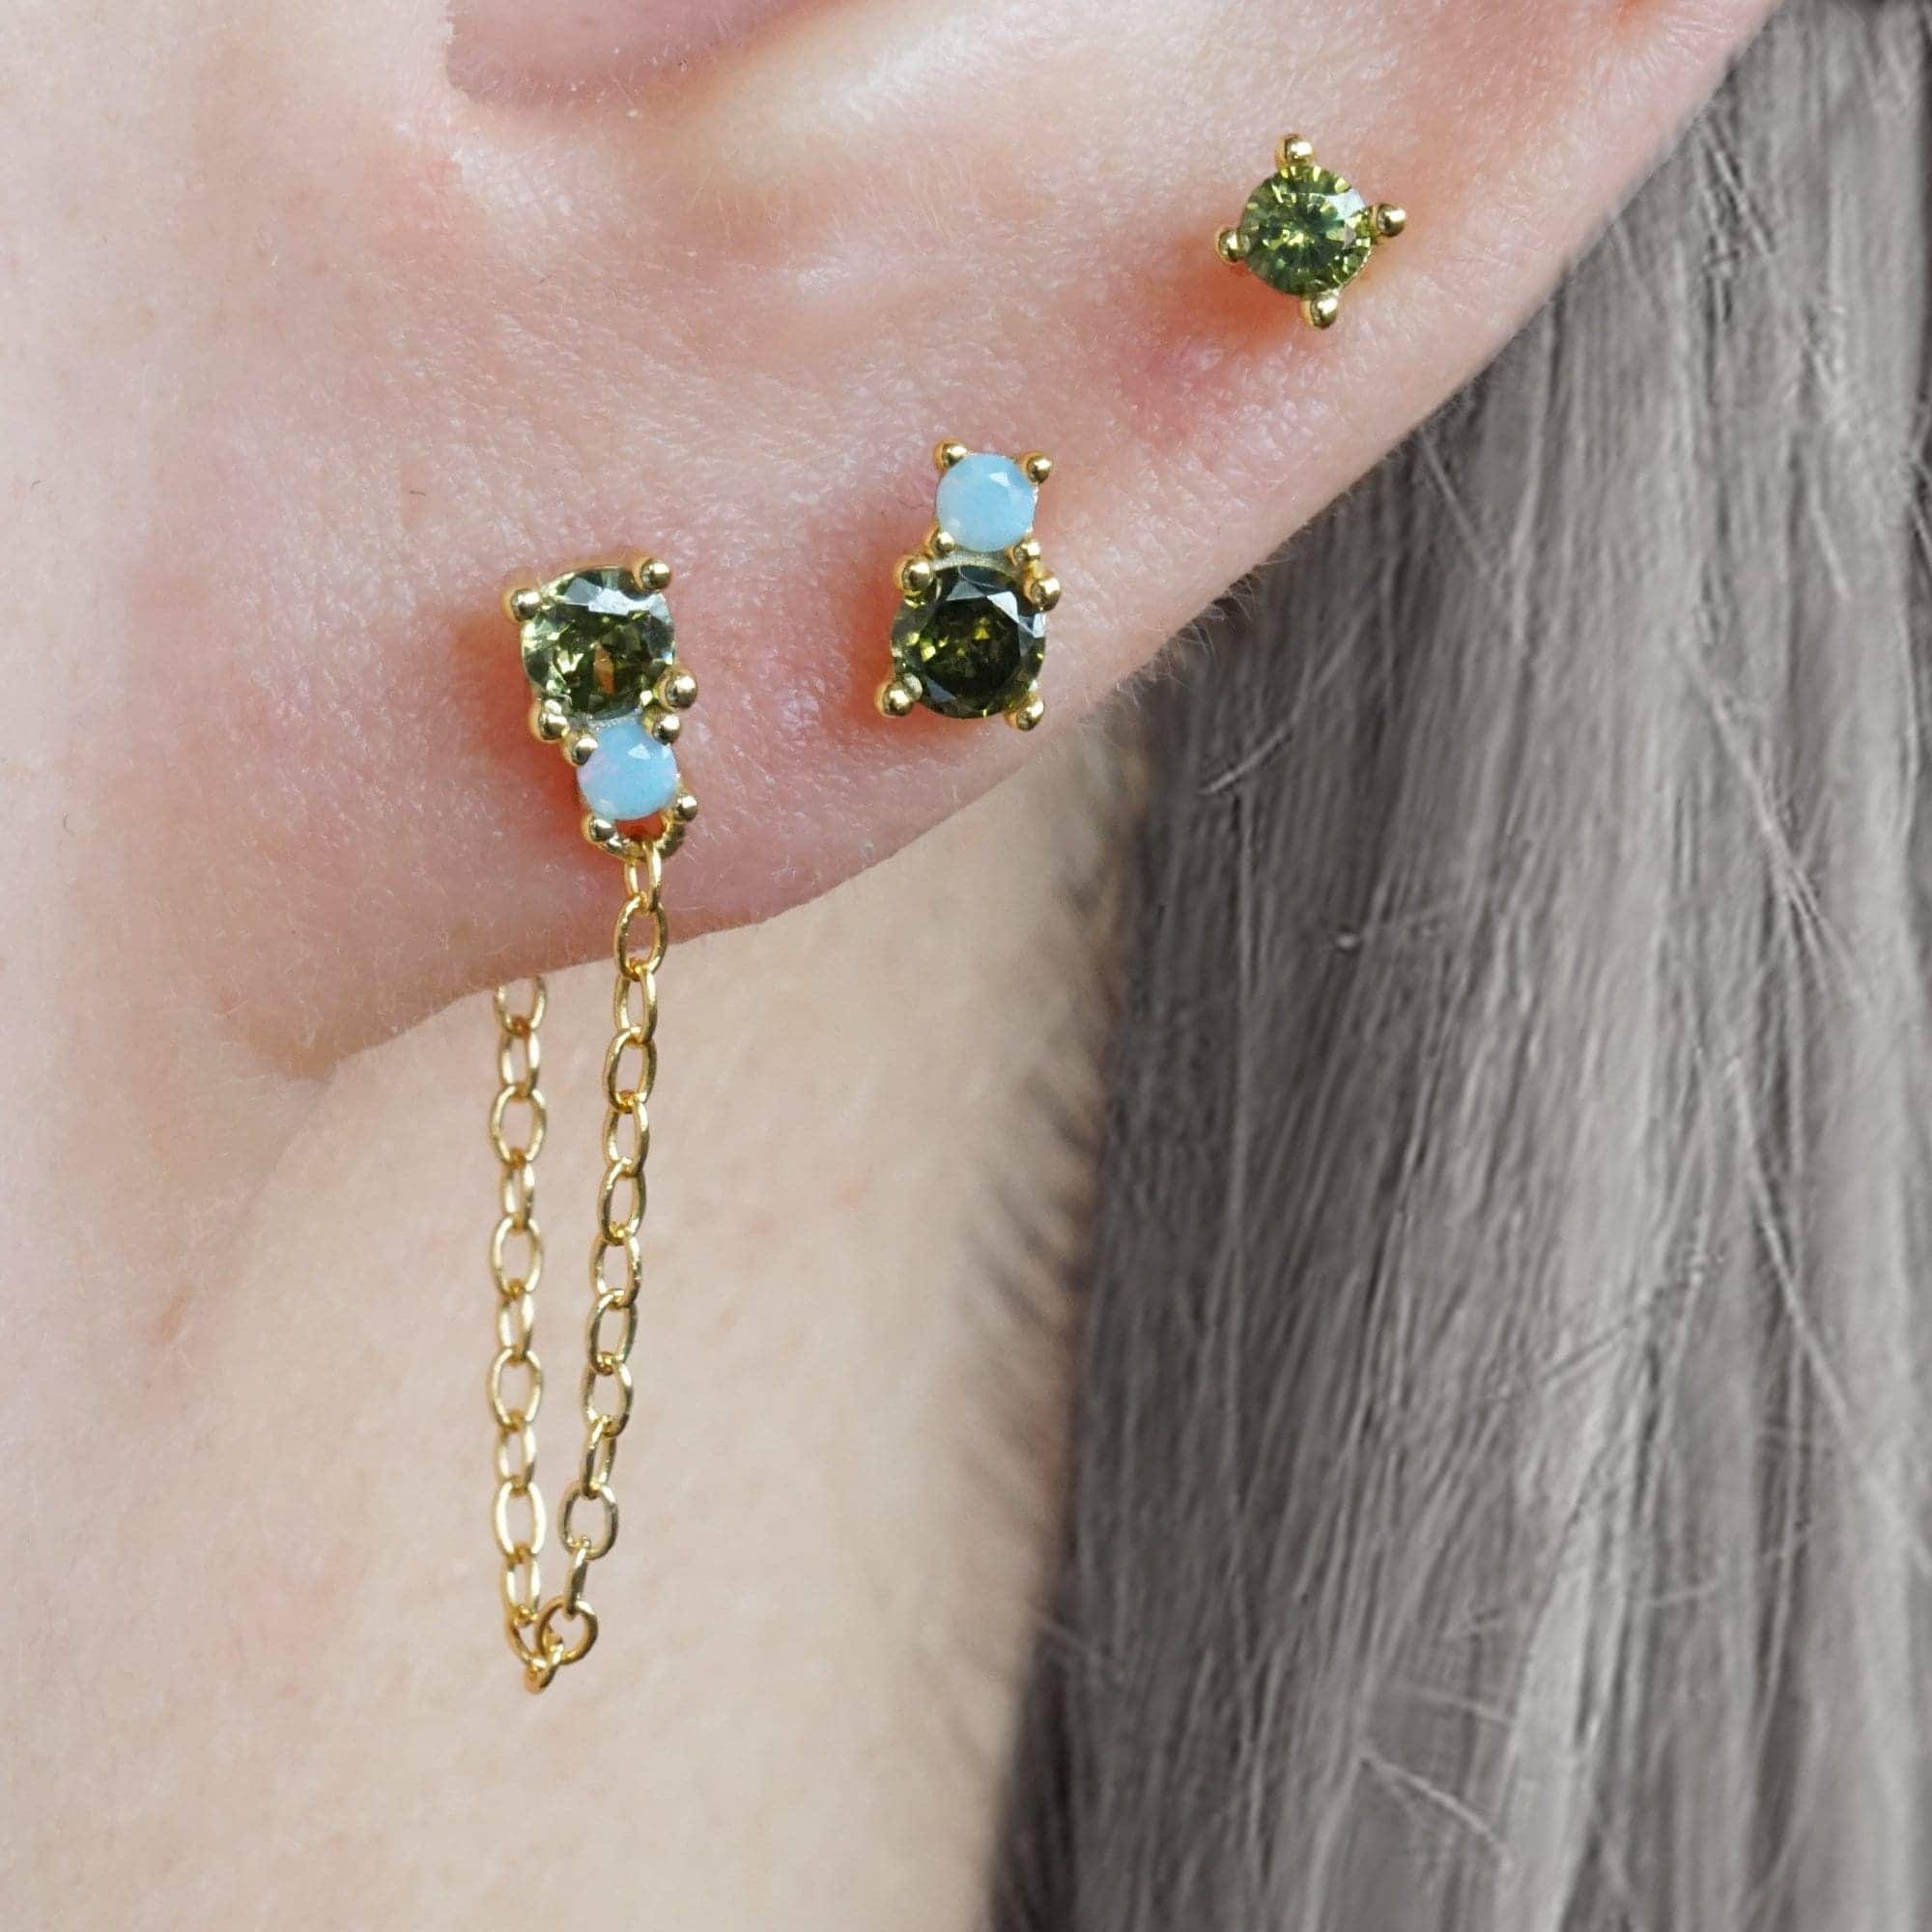 Hidden Helix Earring Dangle Stud Ear Piercing Jewelry